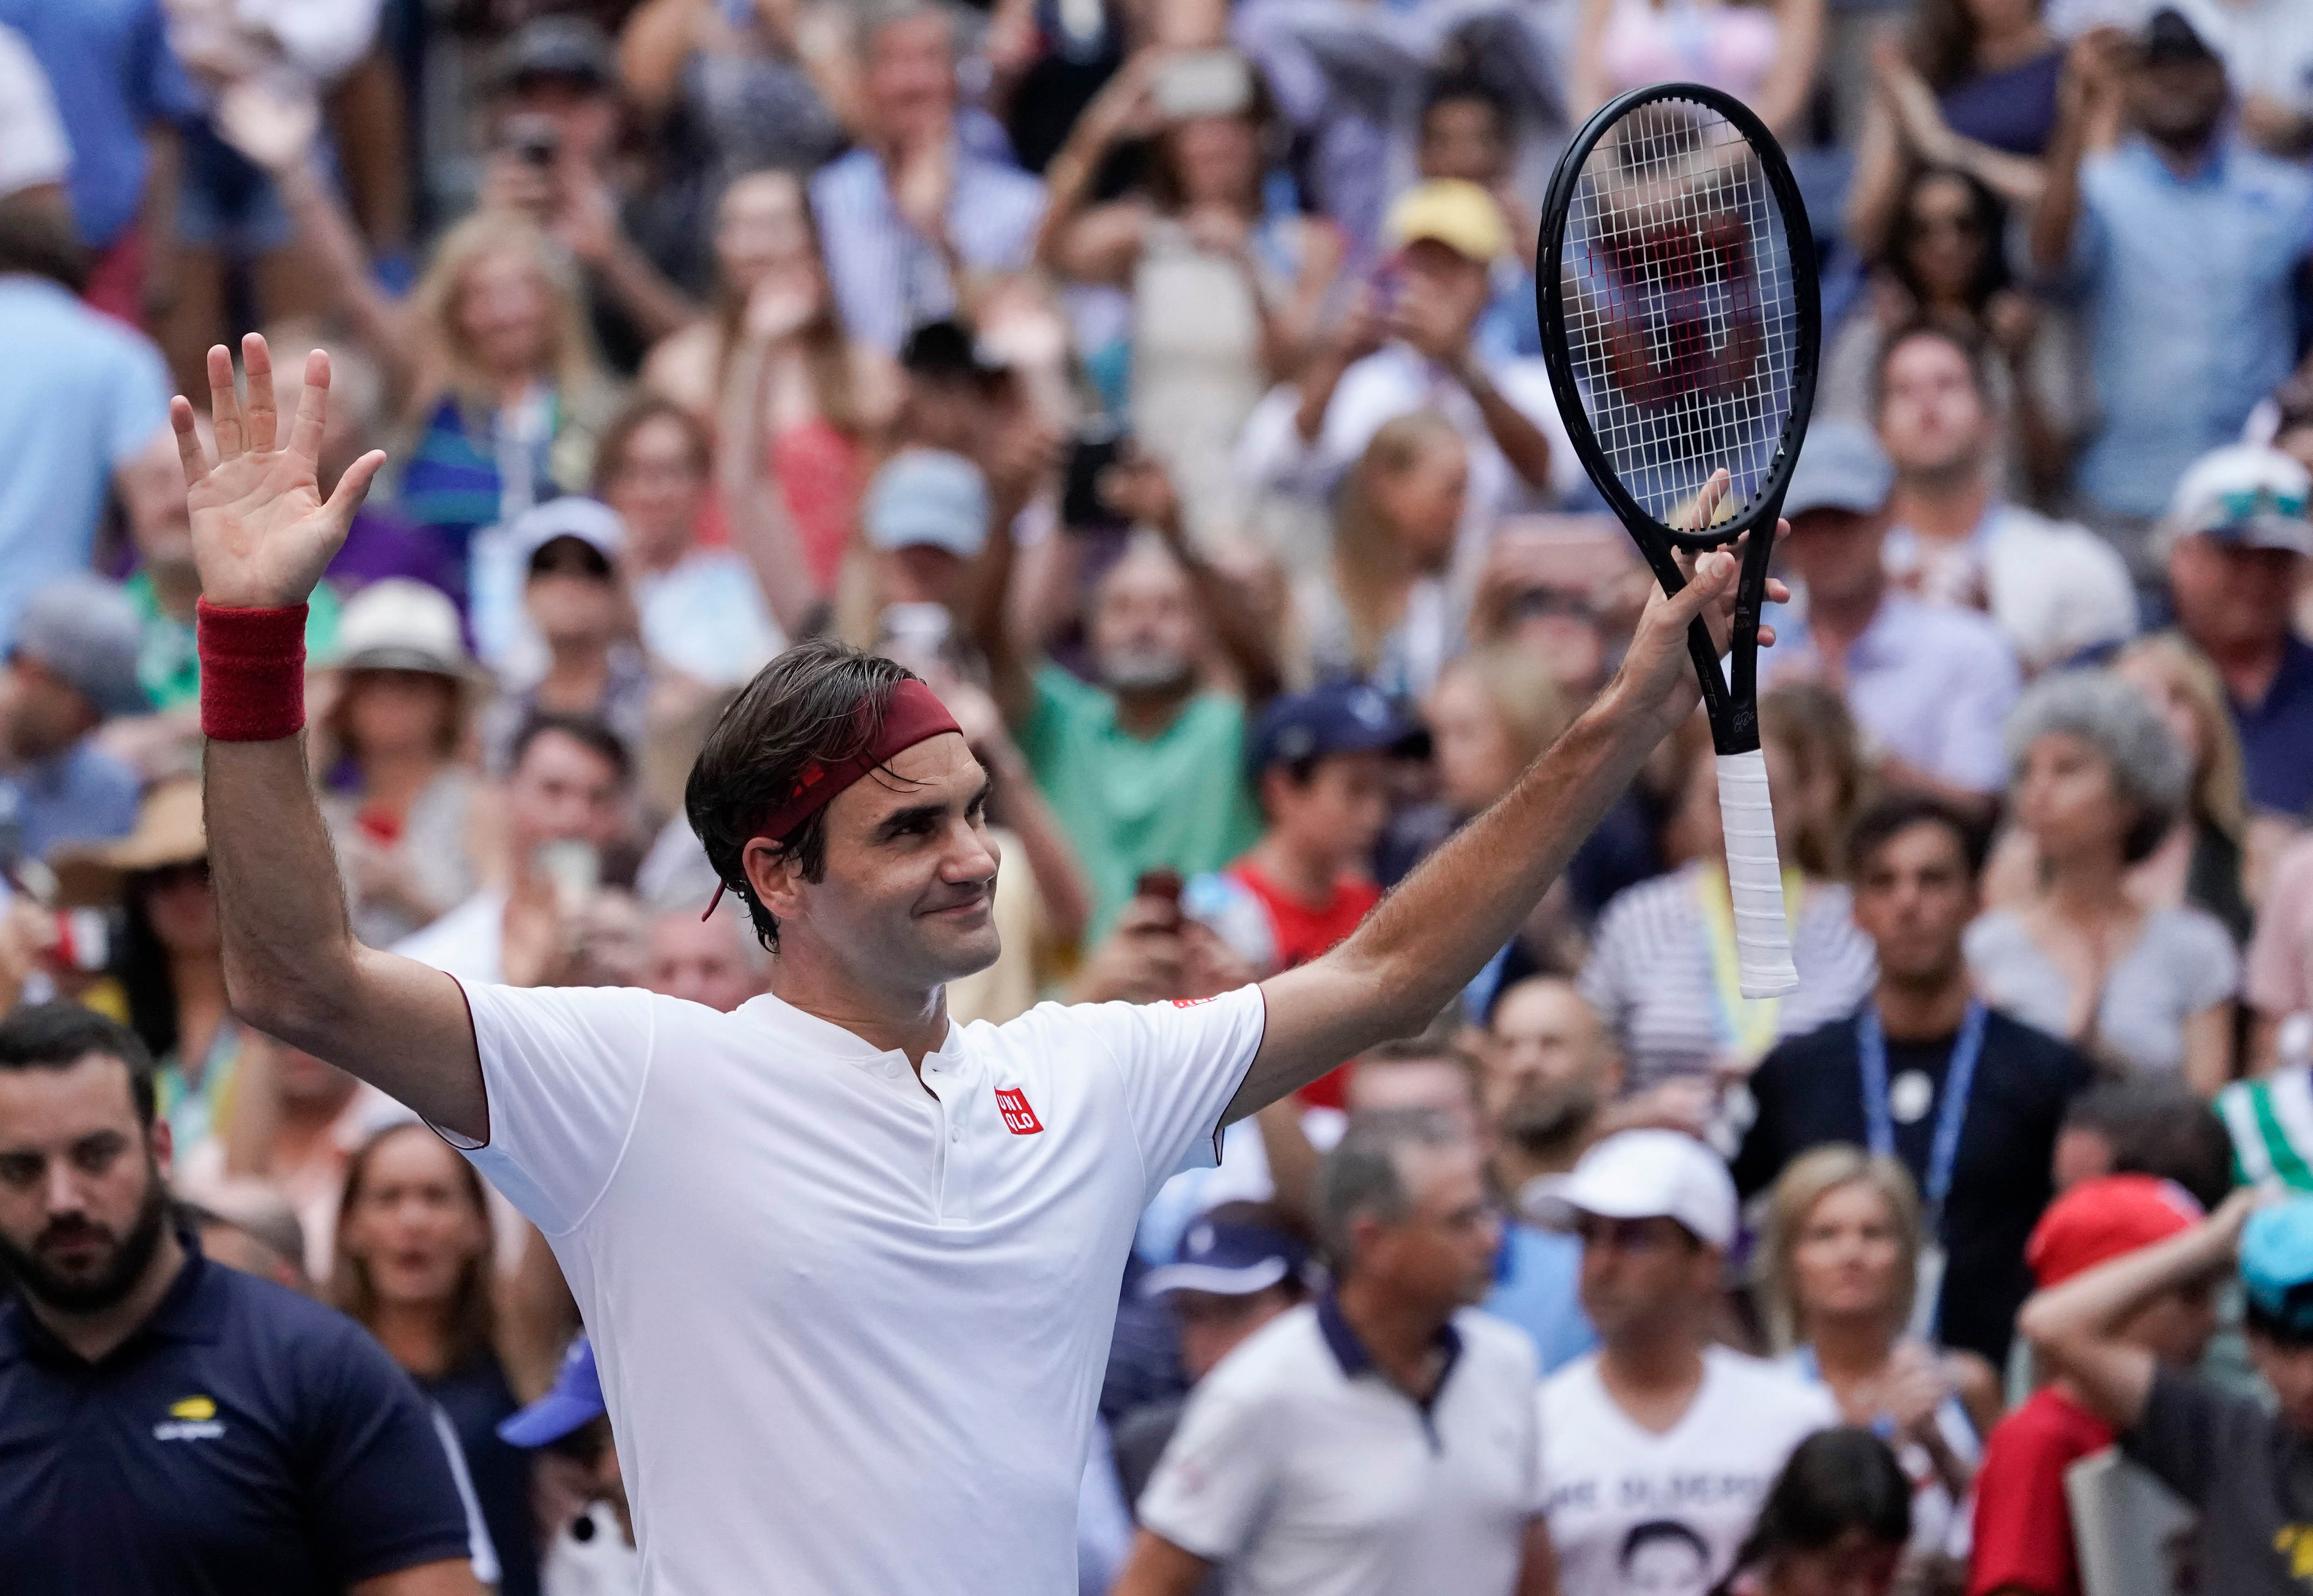 Tennis: Federer hands Kyrgios U.S. Open masterclass